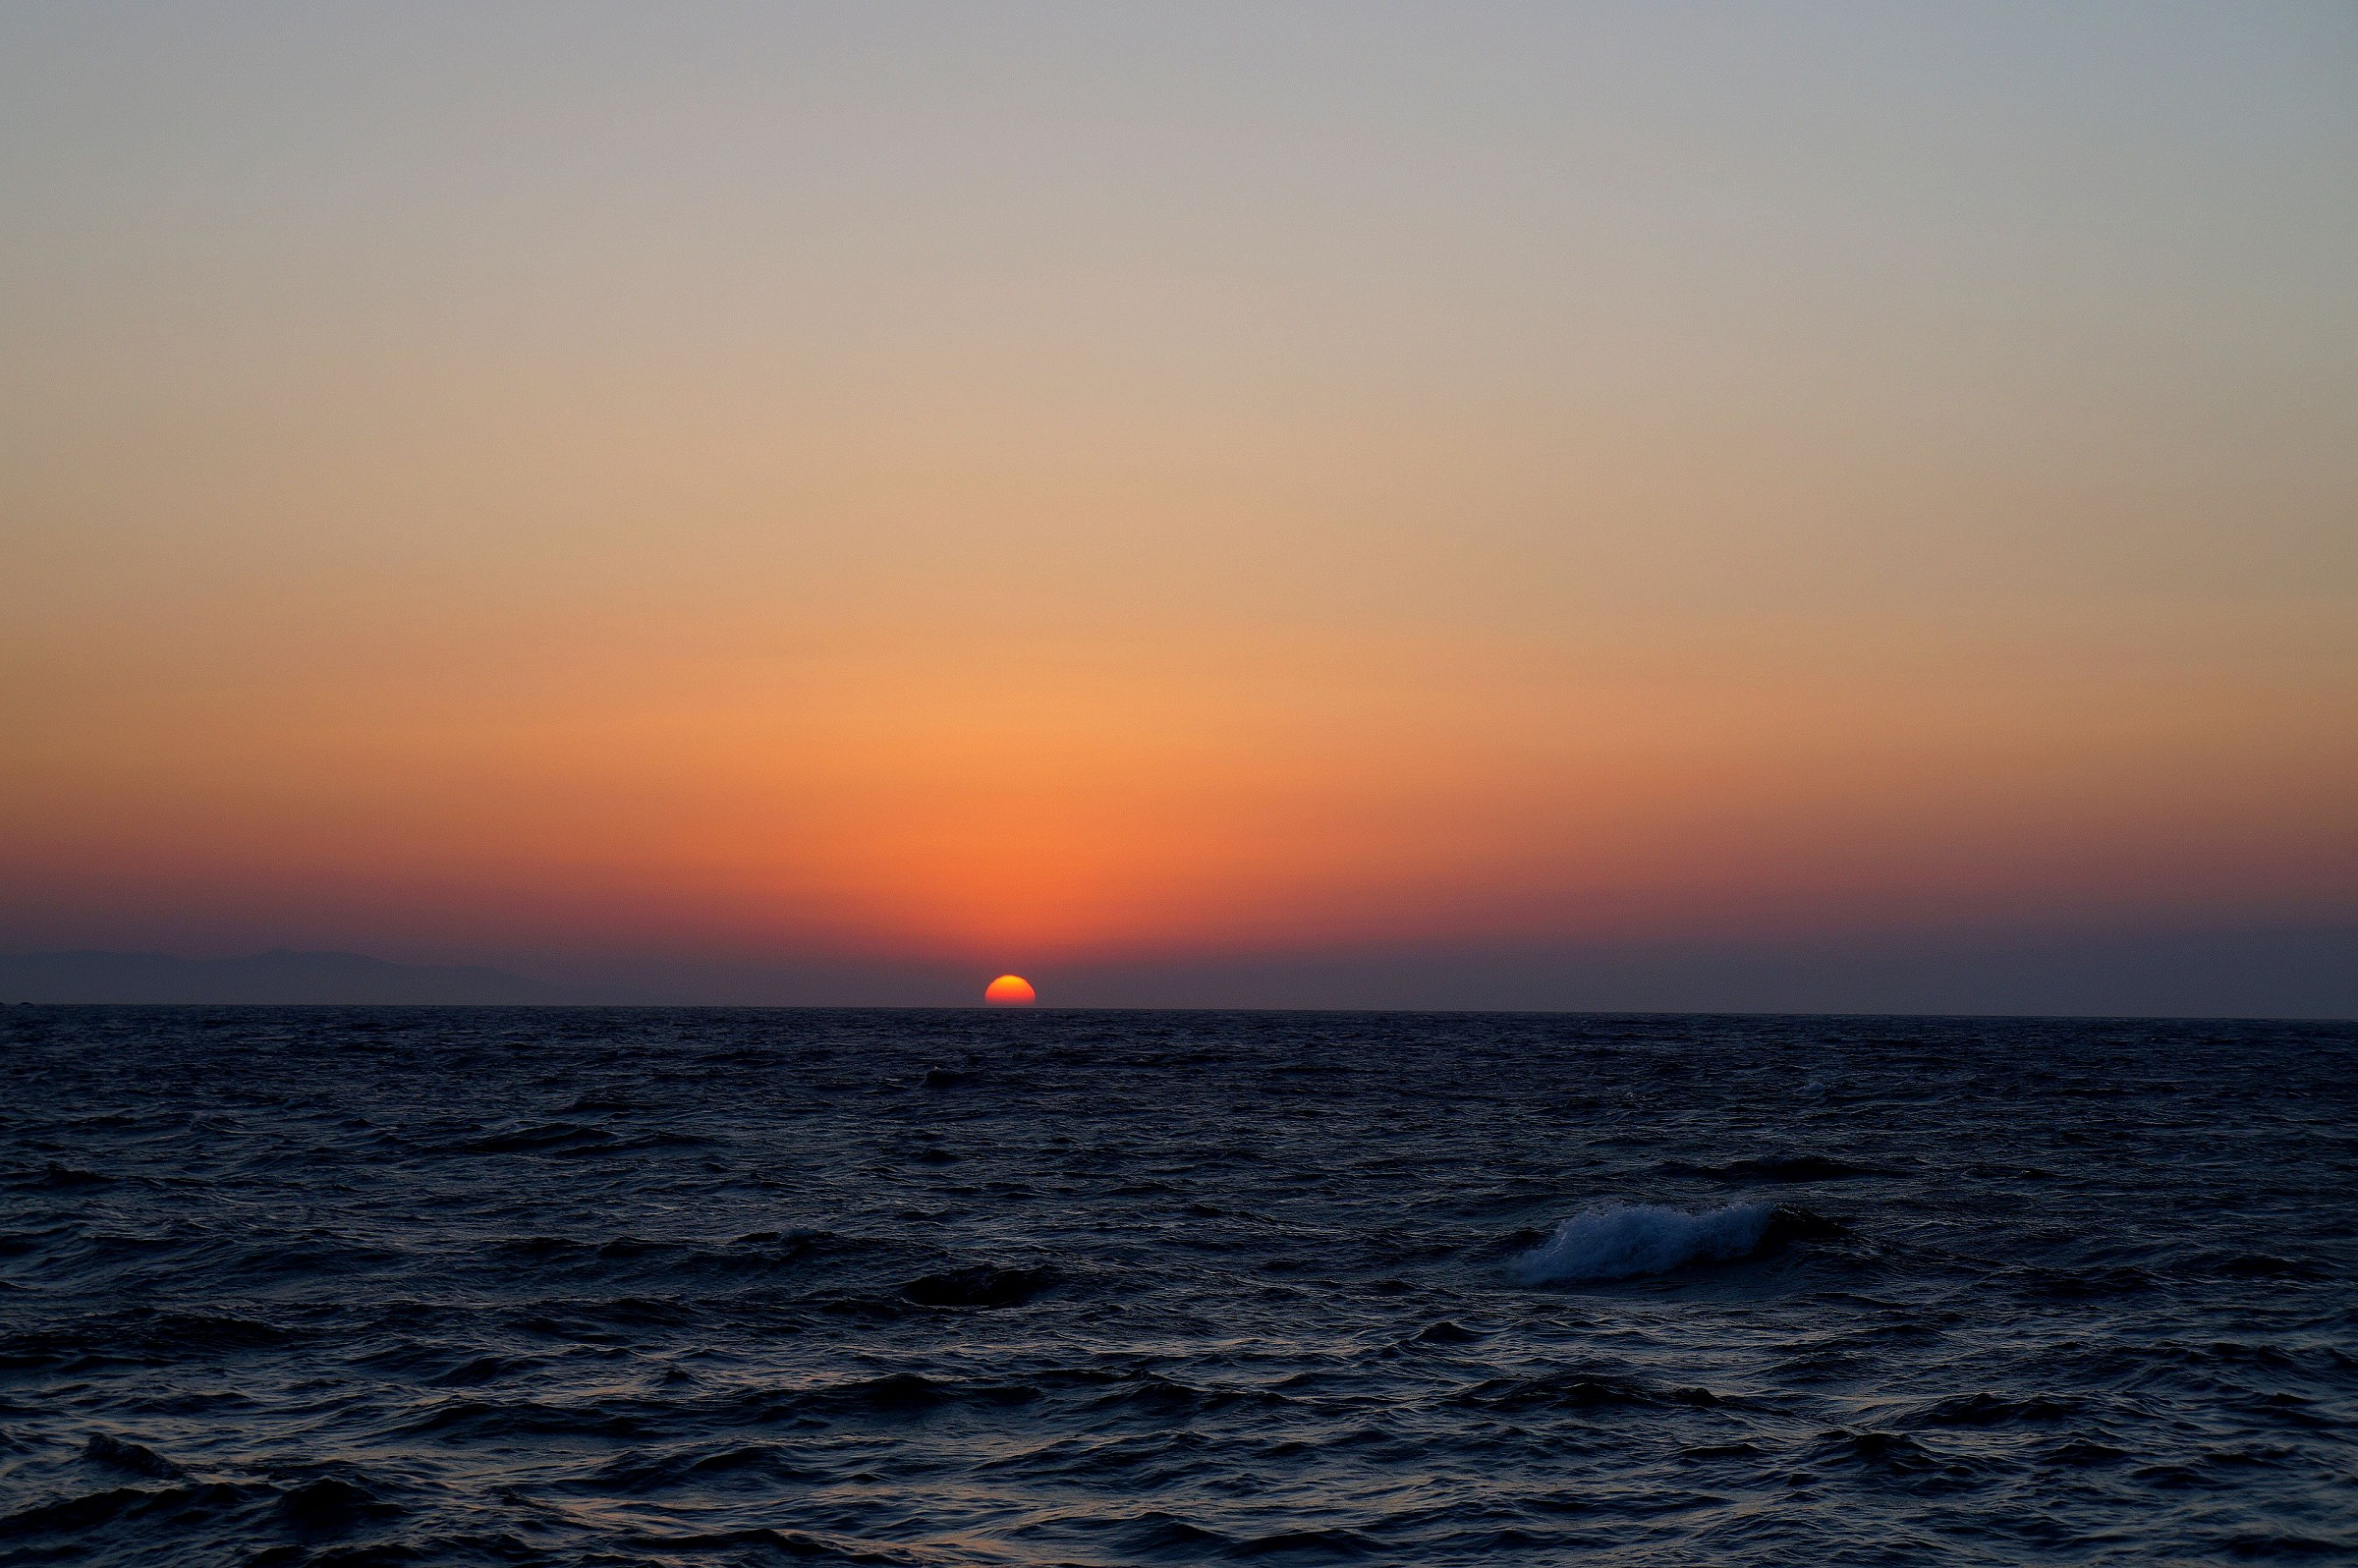 Mykonos-magia del tramonto2-...